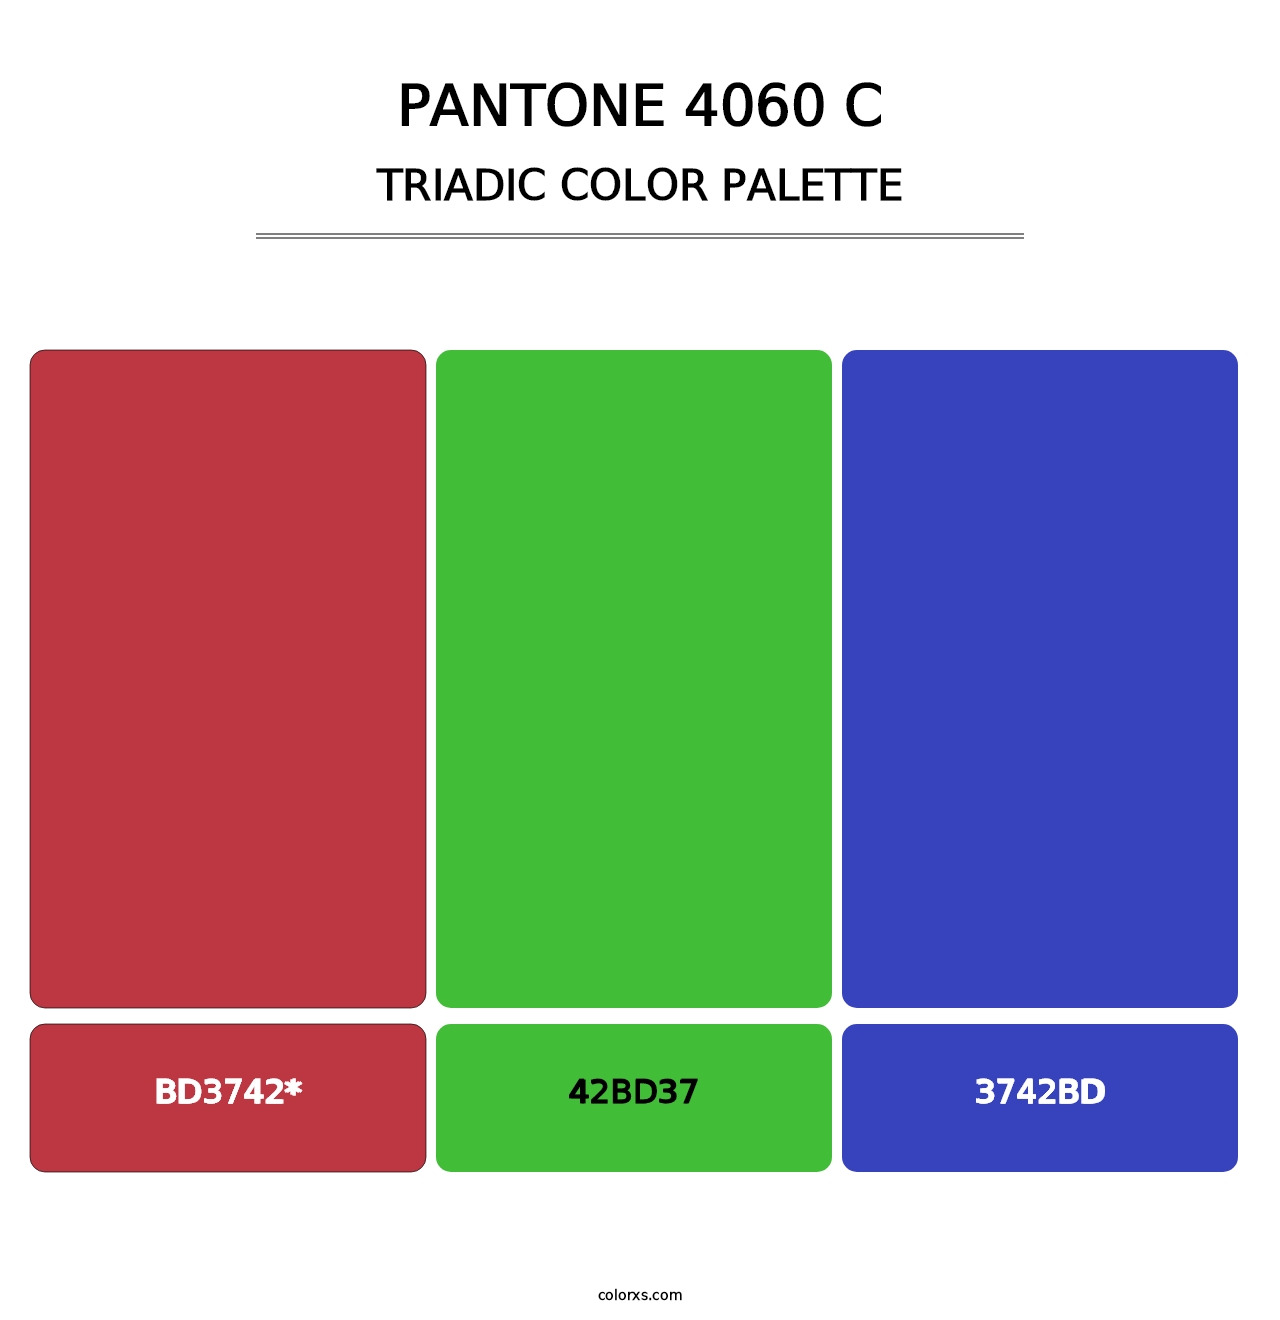 PANTONE 4060 C - Triadic Color Palette